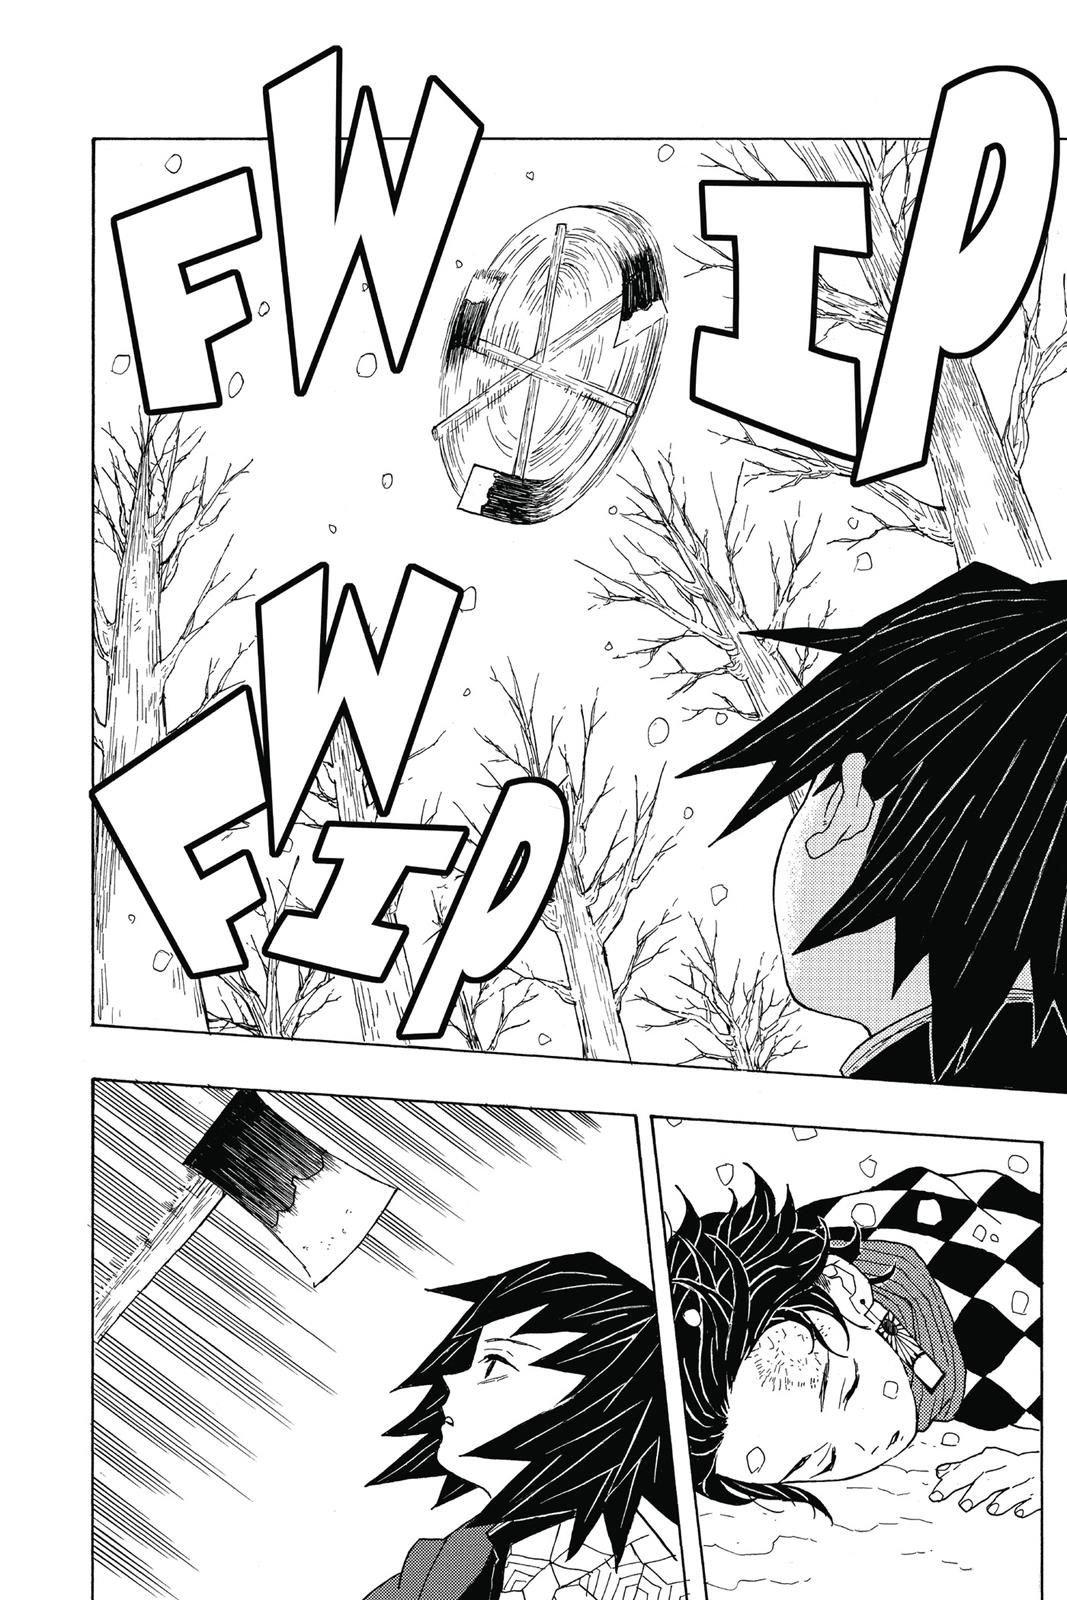 Demon Slayer Manga Manga Chapter - 1 - image 29